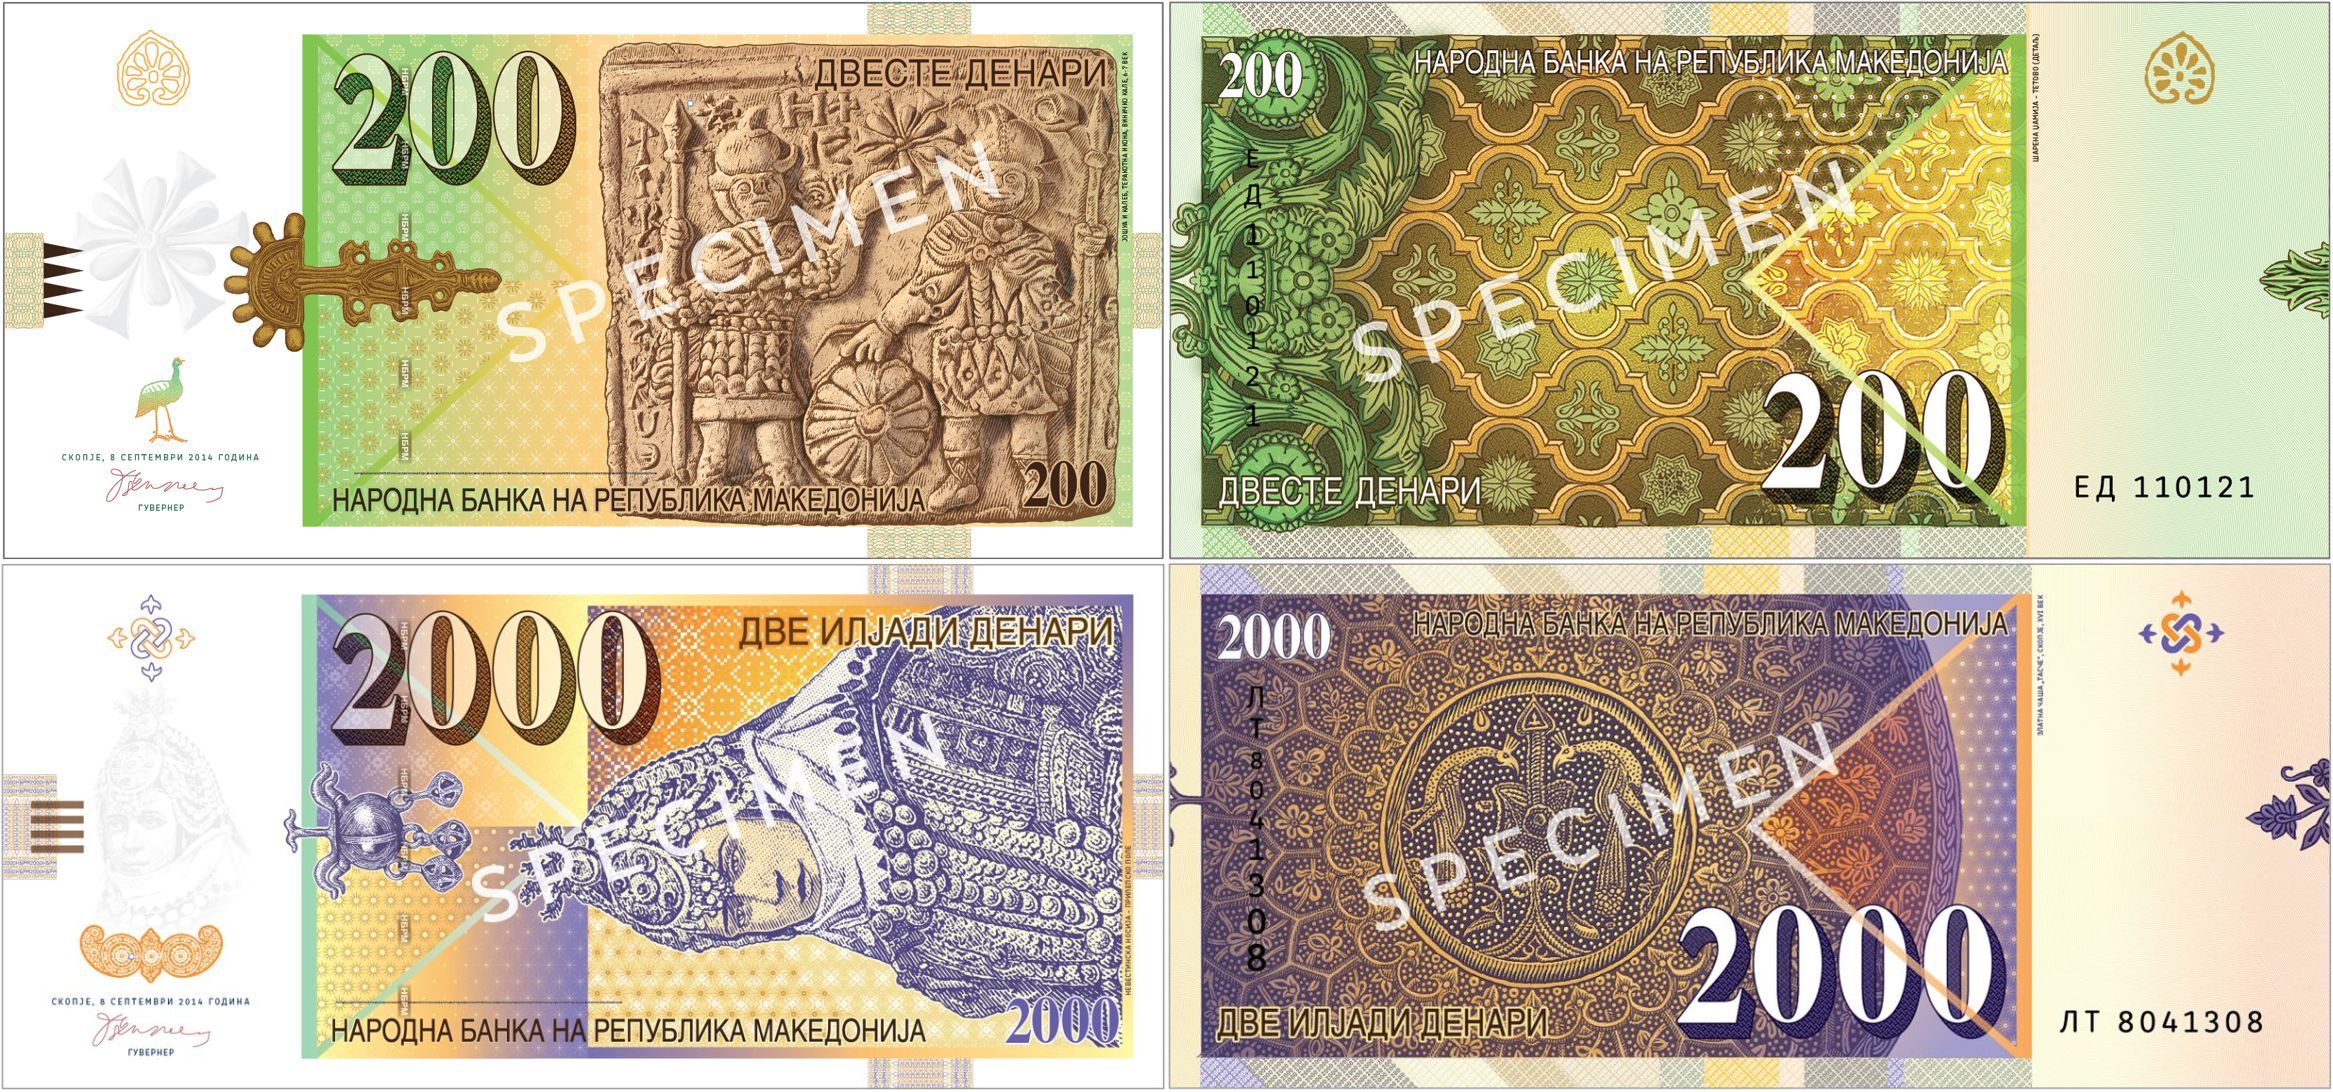 Macedonia wprowadzi do obiegu banknoty 200 i 2000 denarów do końca 2016 roku